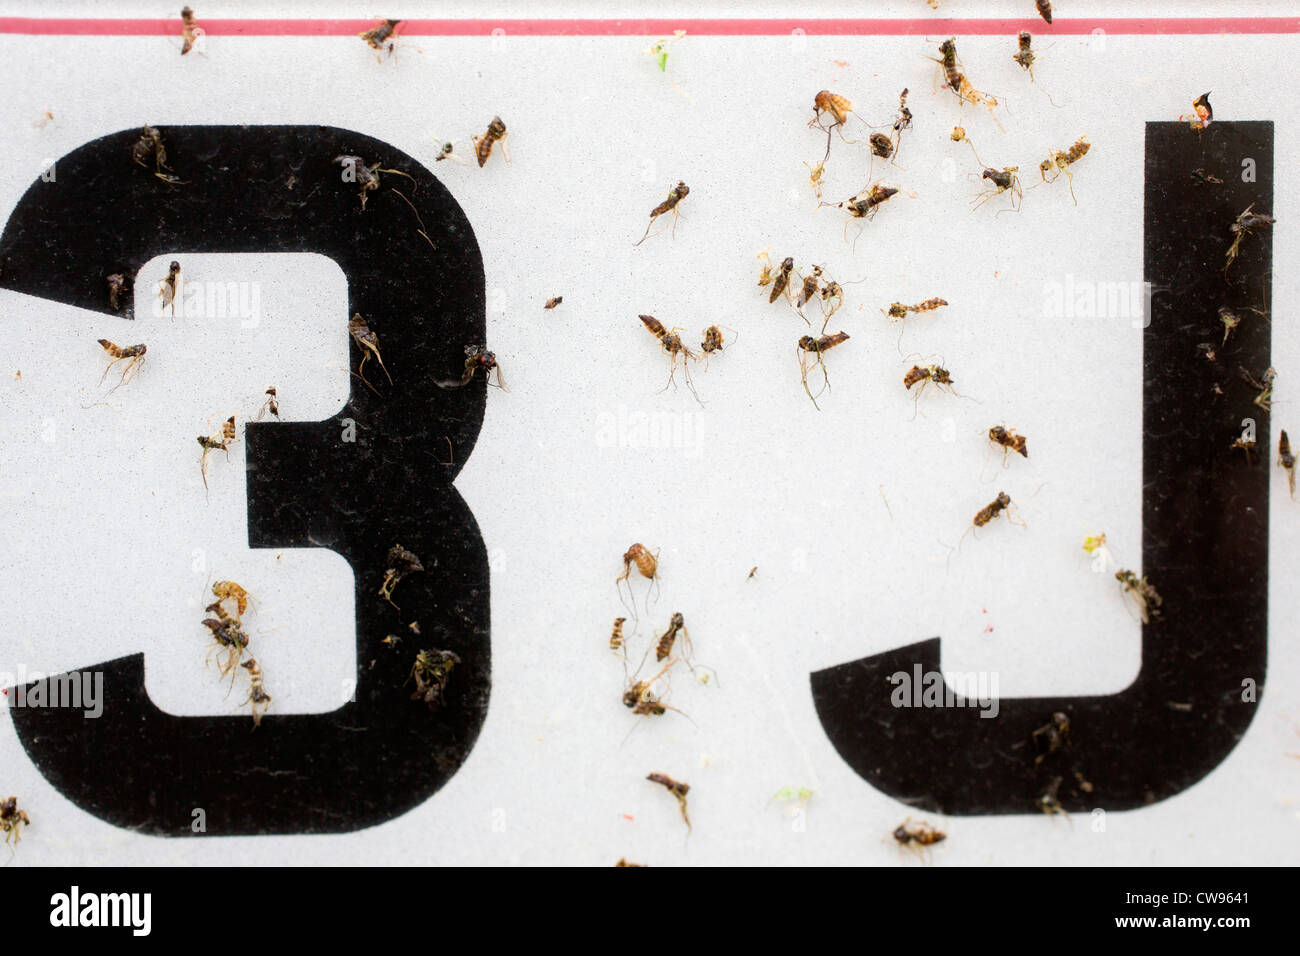 Los insectos en el coche número de la placa; verano; UK Foto de stock